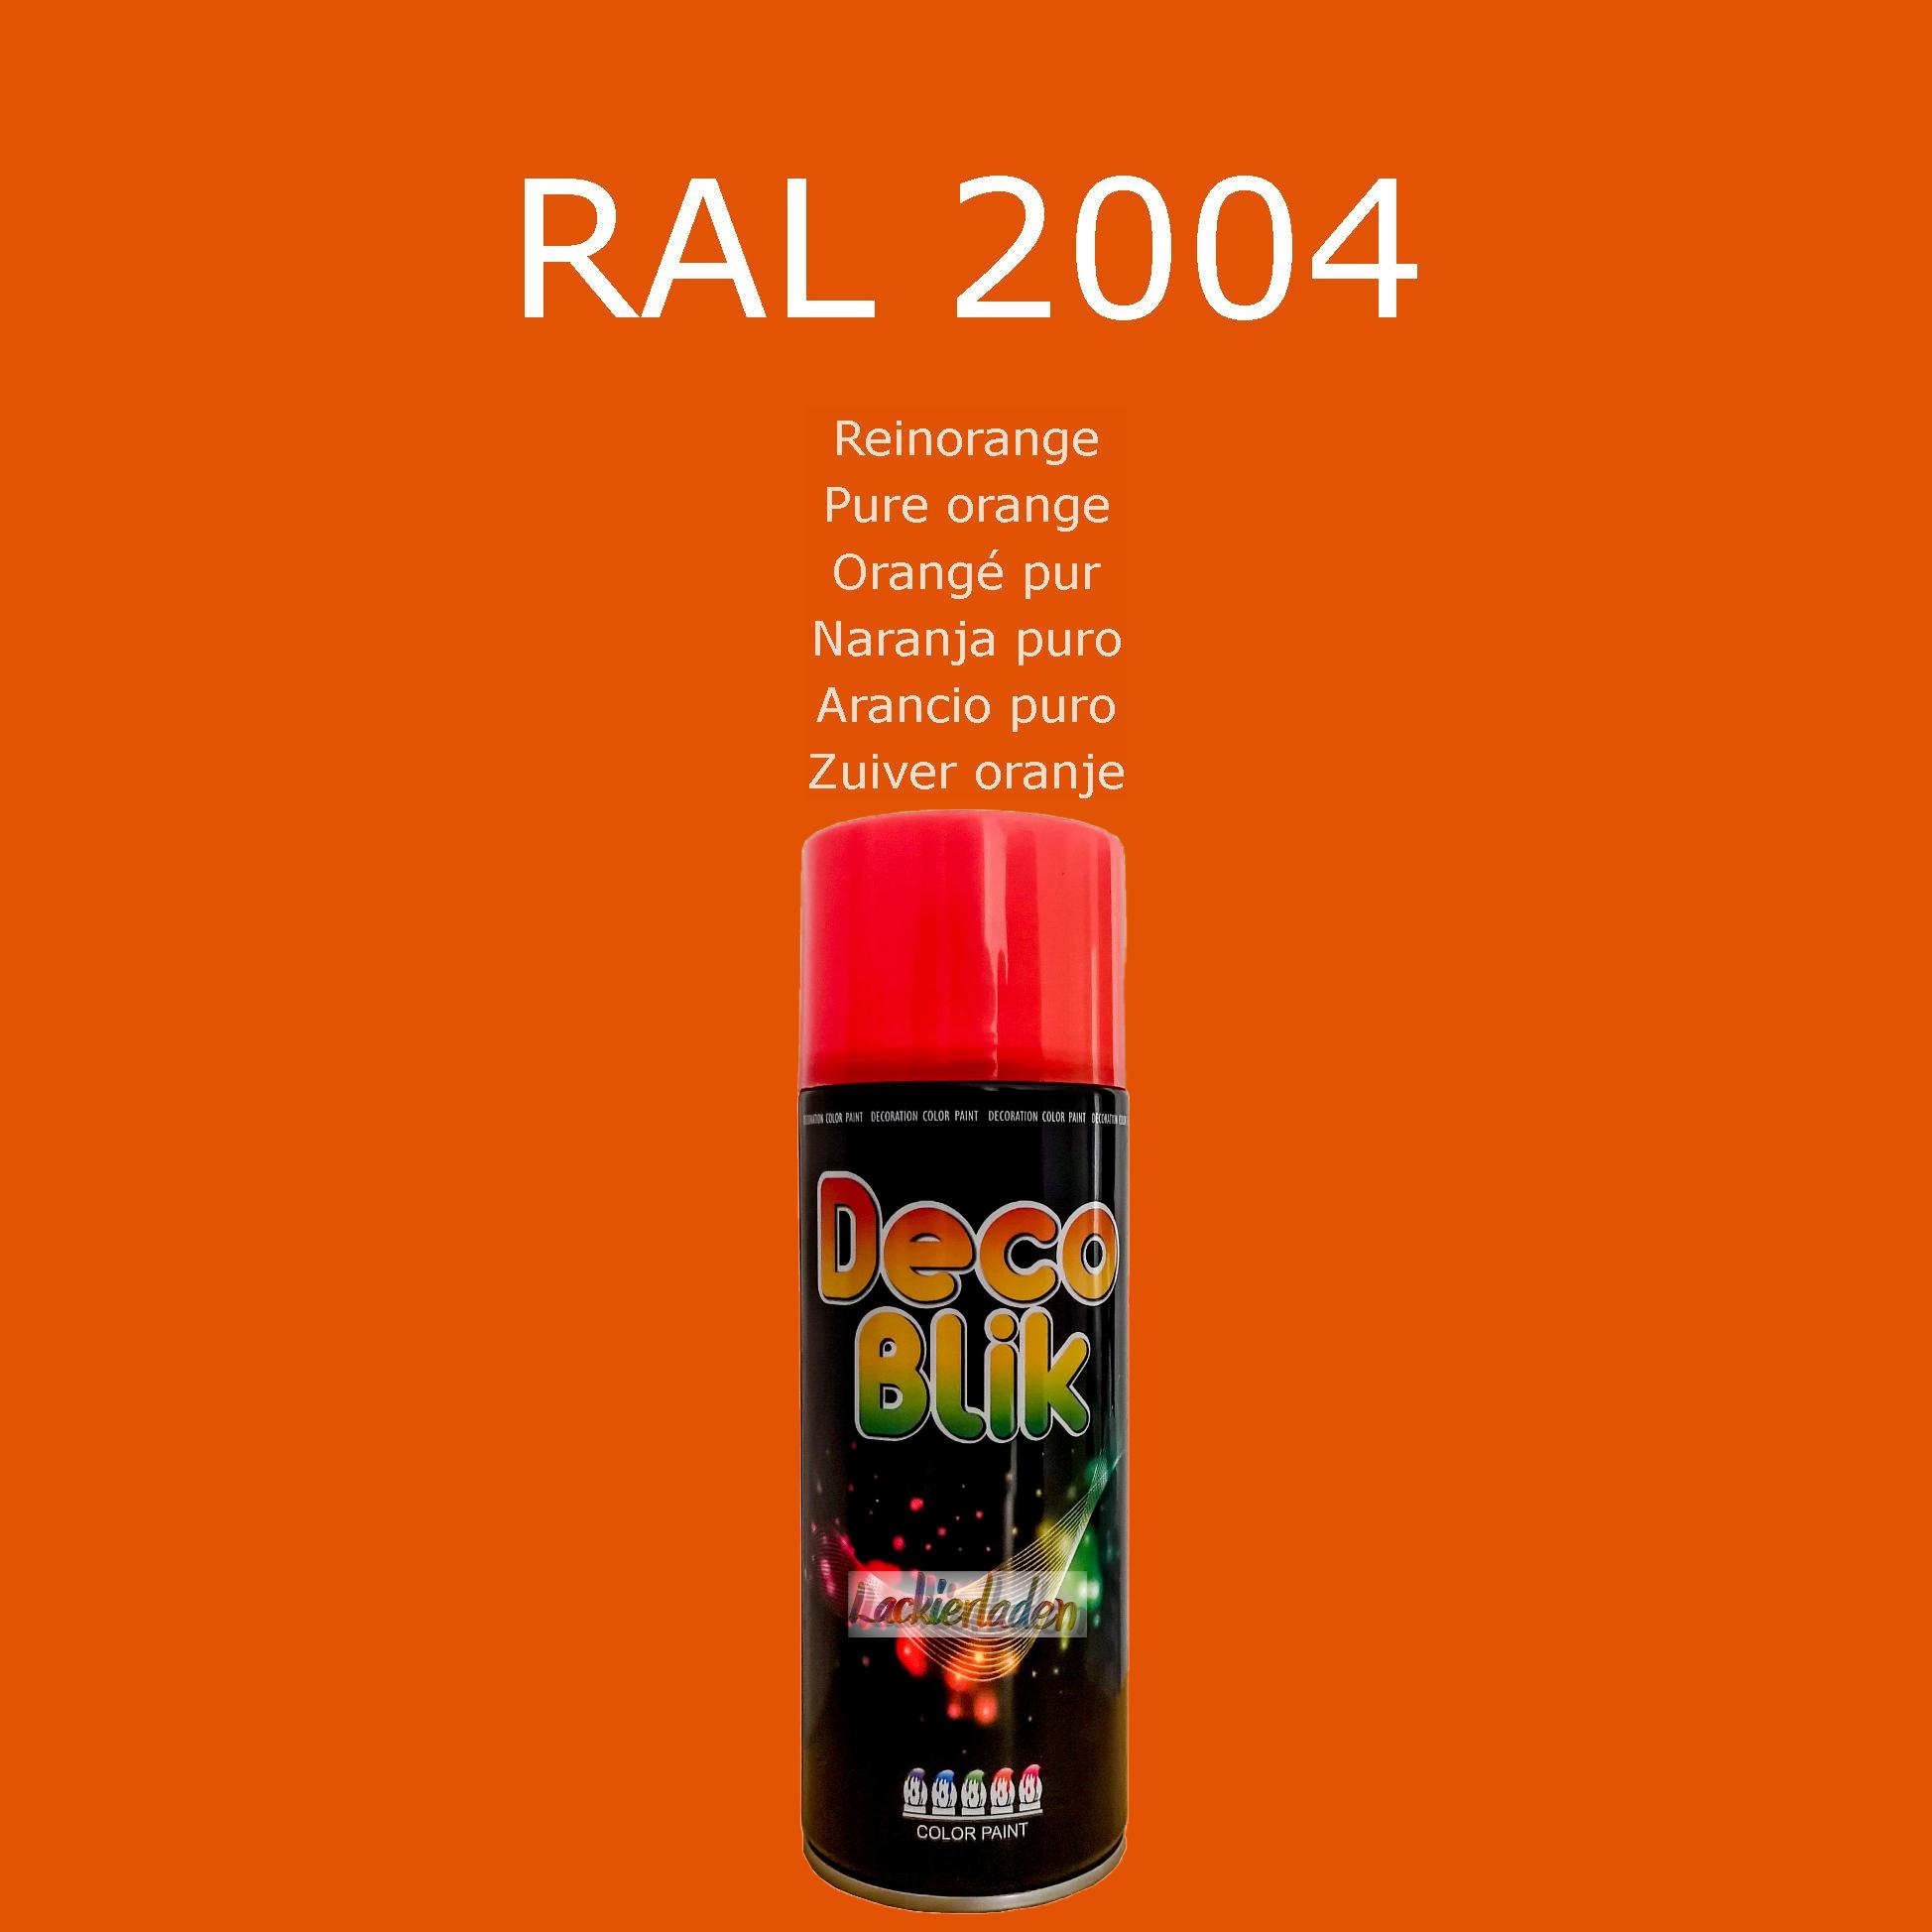 Zollex Decolack Spraydose 400 ml RAL 2004 Reinorange Pure orange Orangé pur Naranja puro Arancio puro Zuiver oranje | Dekolack Lackspray Sprüh Dose